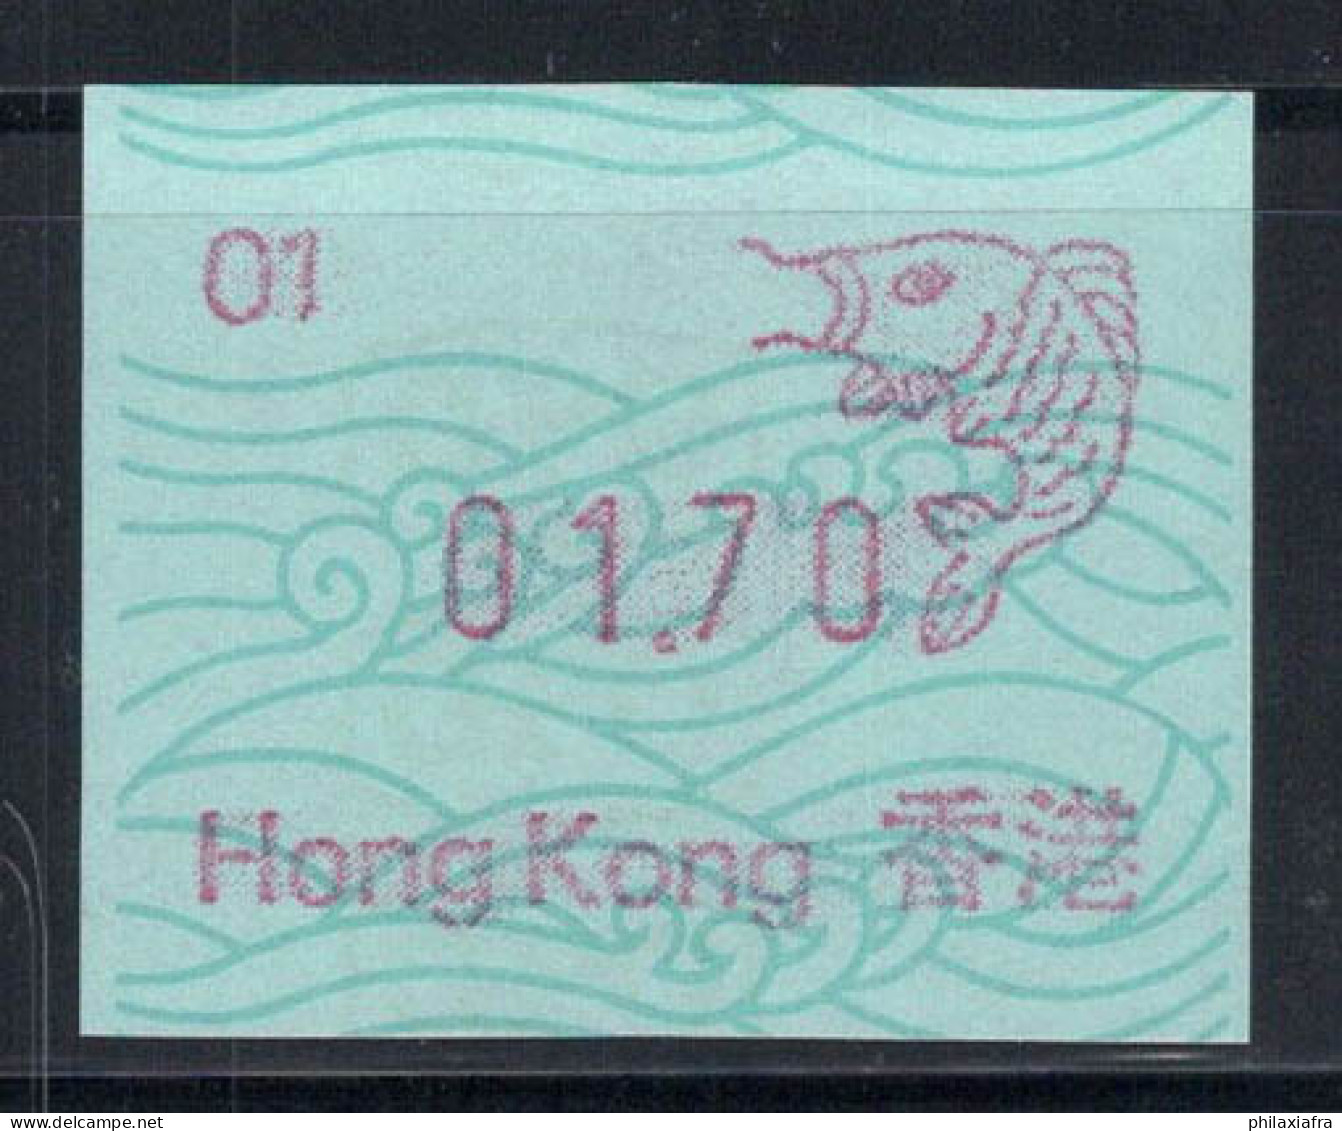 Hong Kong 1986 Mi. 1 Neuf ** 100% 01.70 - Distributeurs